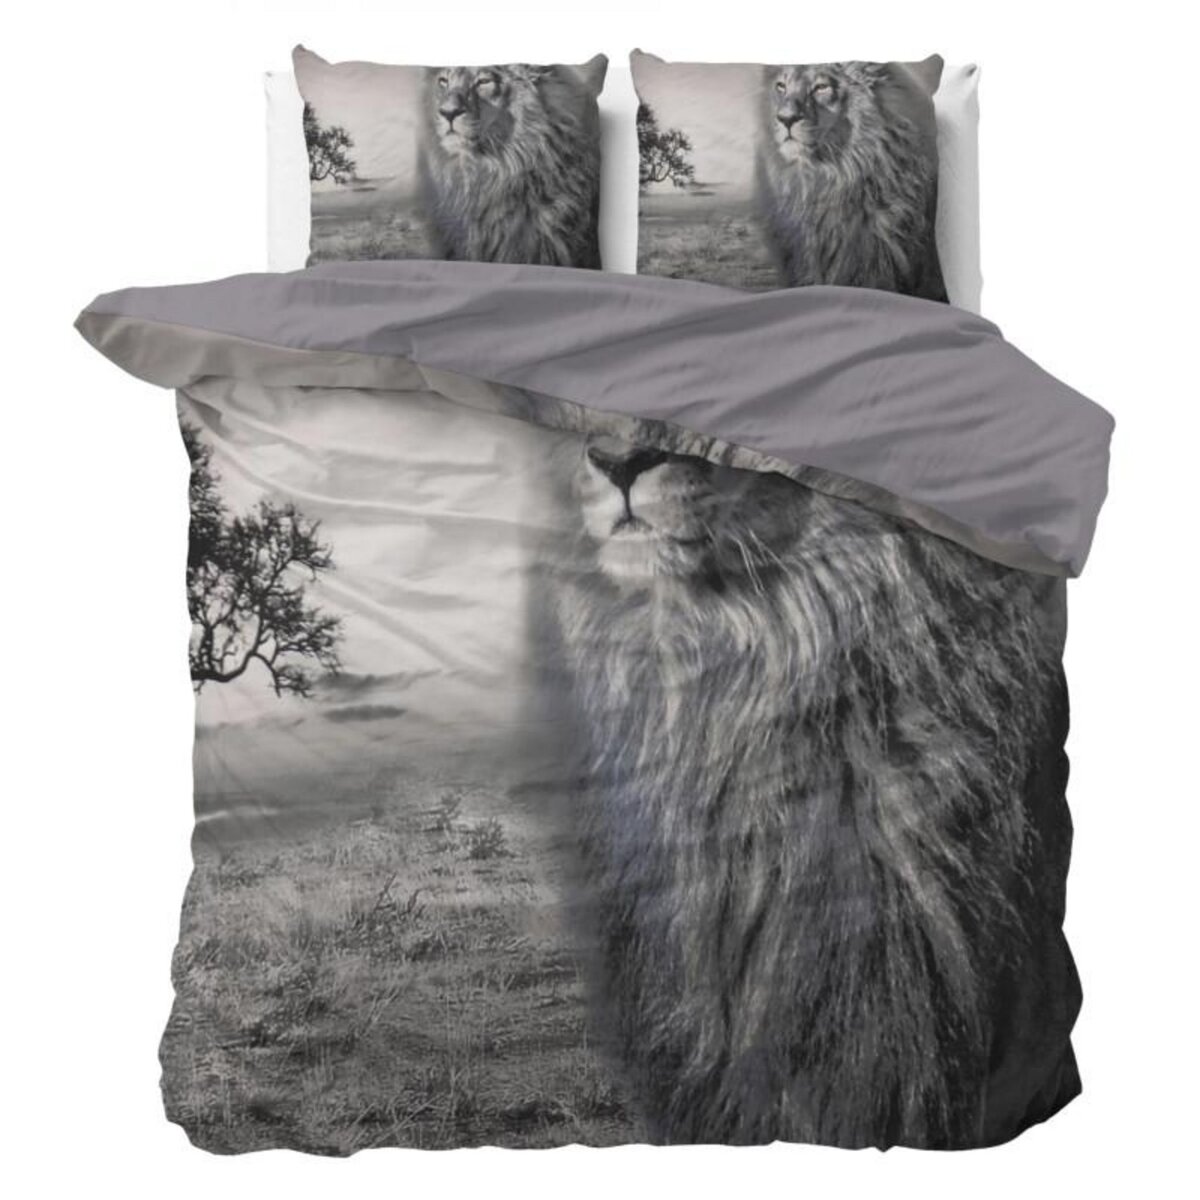 Home Animal Déco - Parure de Lit Double Coton Lion - Housse de Couette  200x220 cm 2 Taies d'oreiller pas cher 